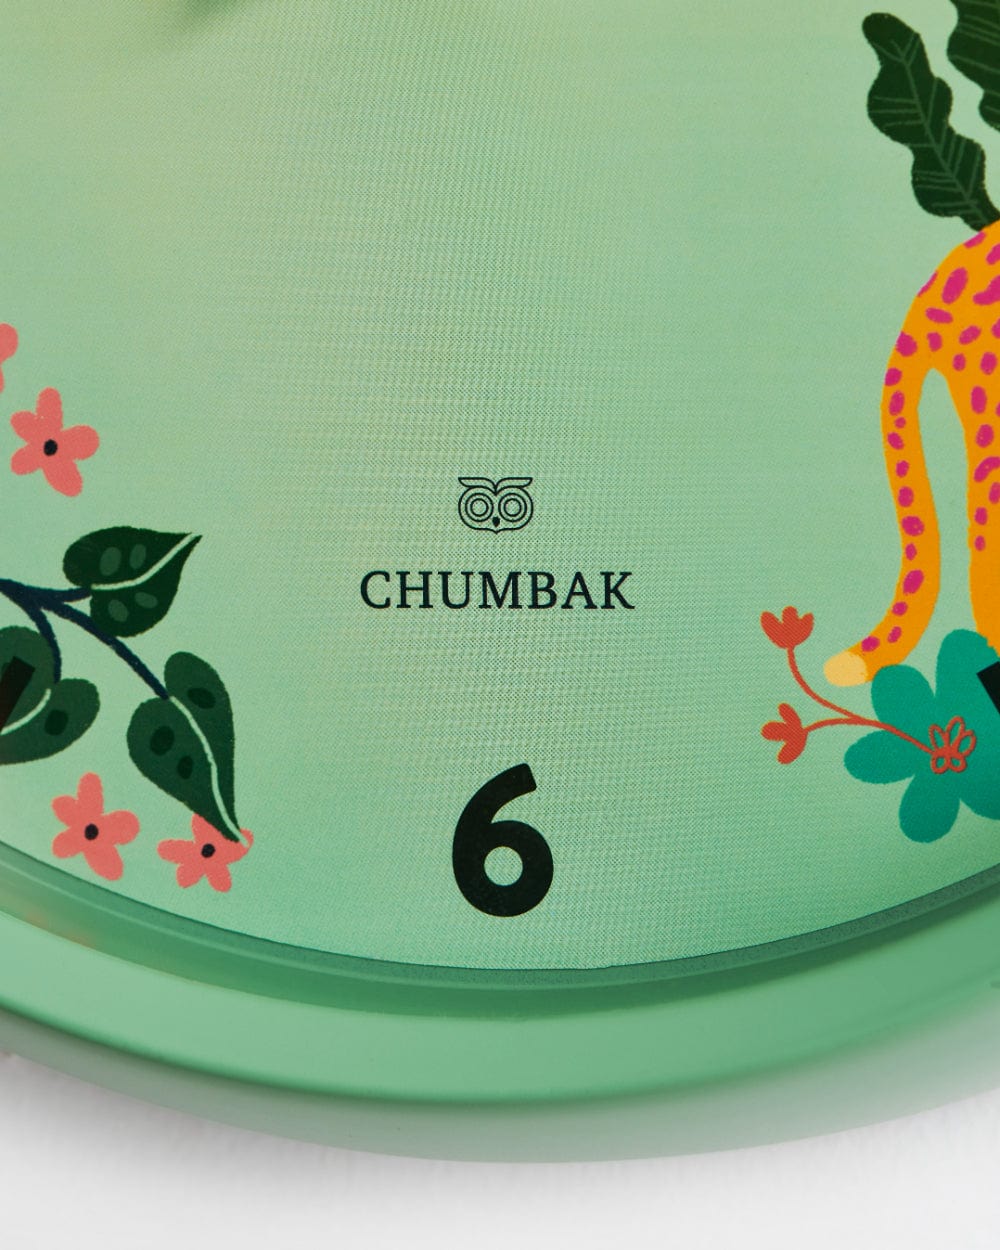 Chumbak Chumbak Tropical Jungle Wall Clock - Teal rim